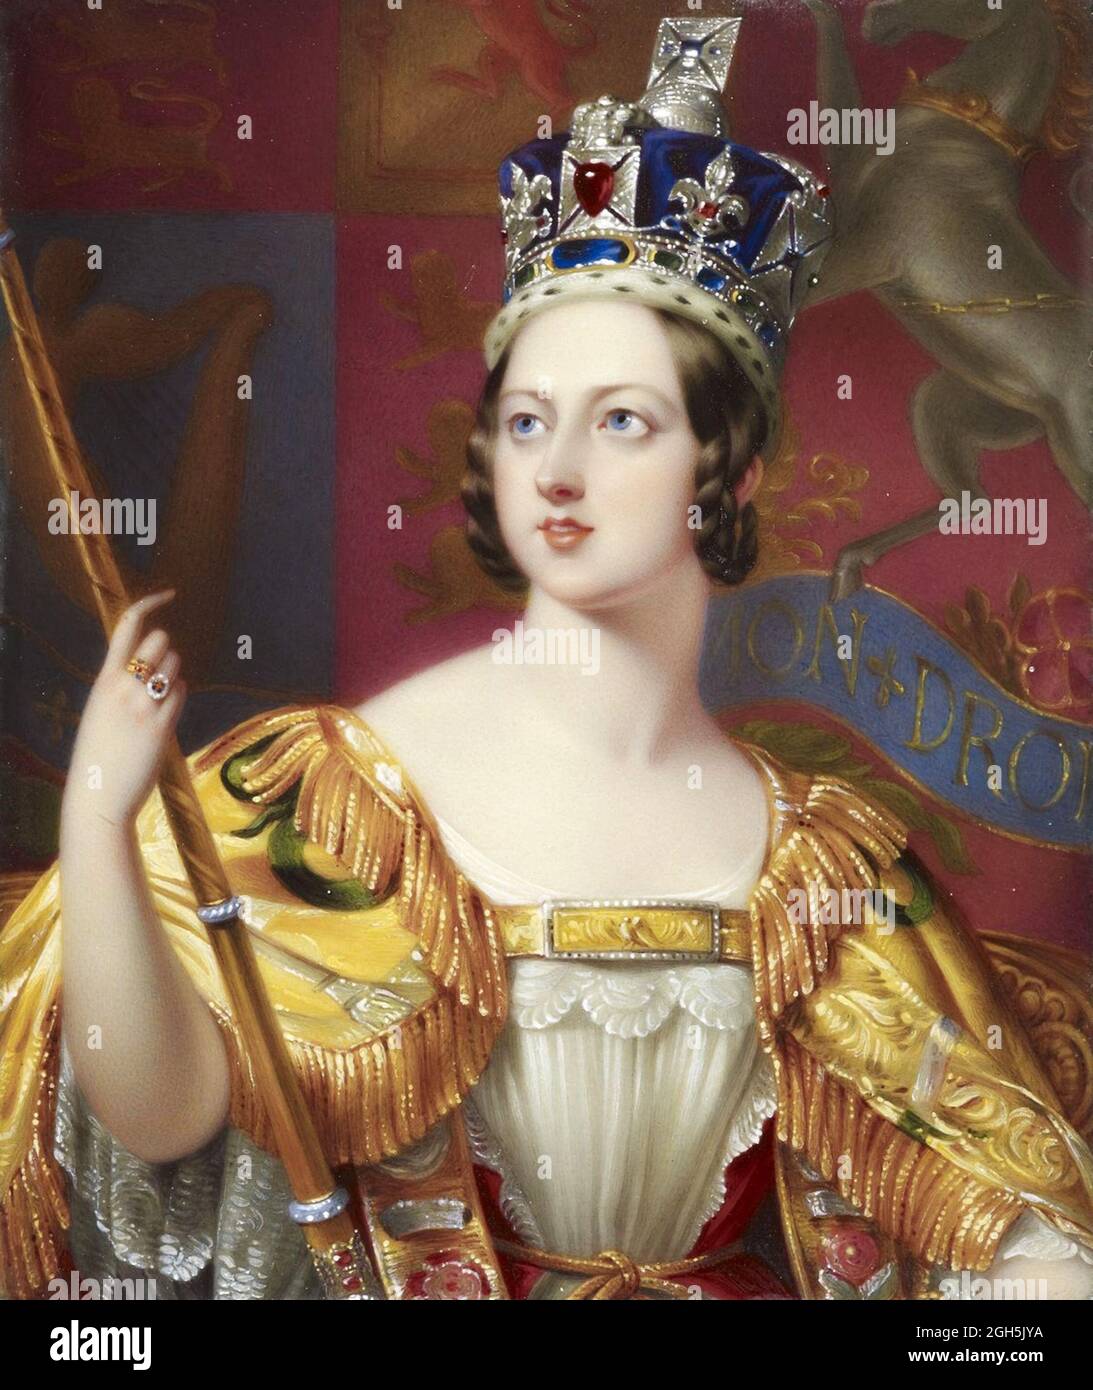 Ein Porträt von George Hayter über Königin Victoria, die von 1837 bis 1901 Königin von England war. Sie ist in ihren Krönungsroben zu sehen. Stockfoto